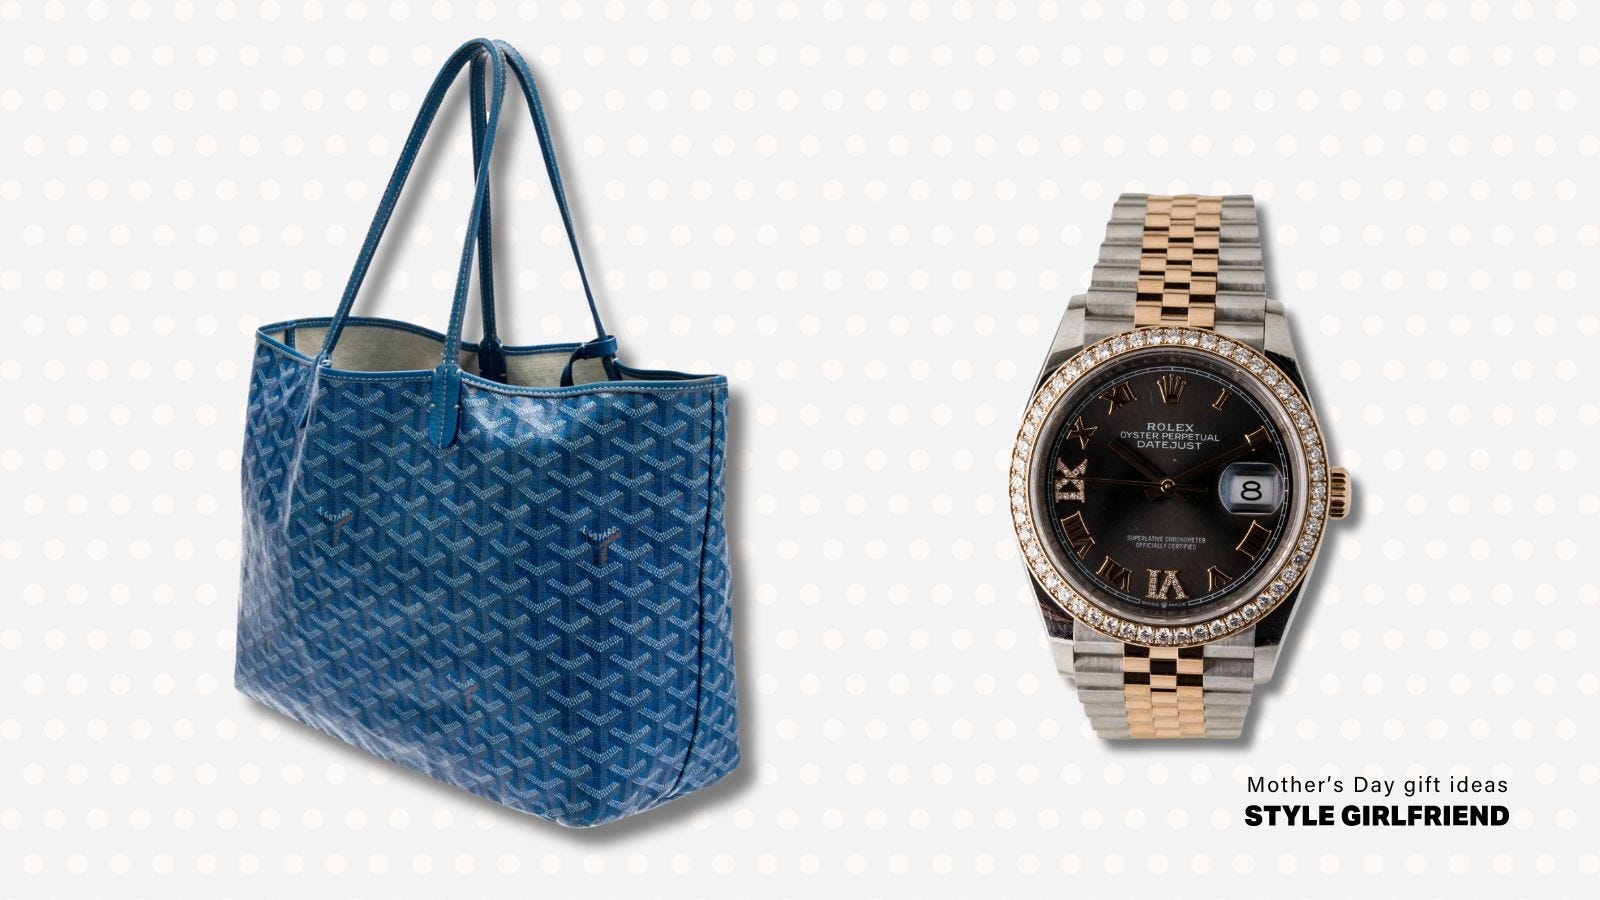 Blue Goyard bag and Datejust Rolex watch